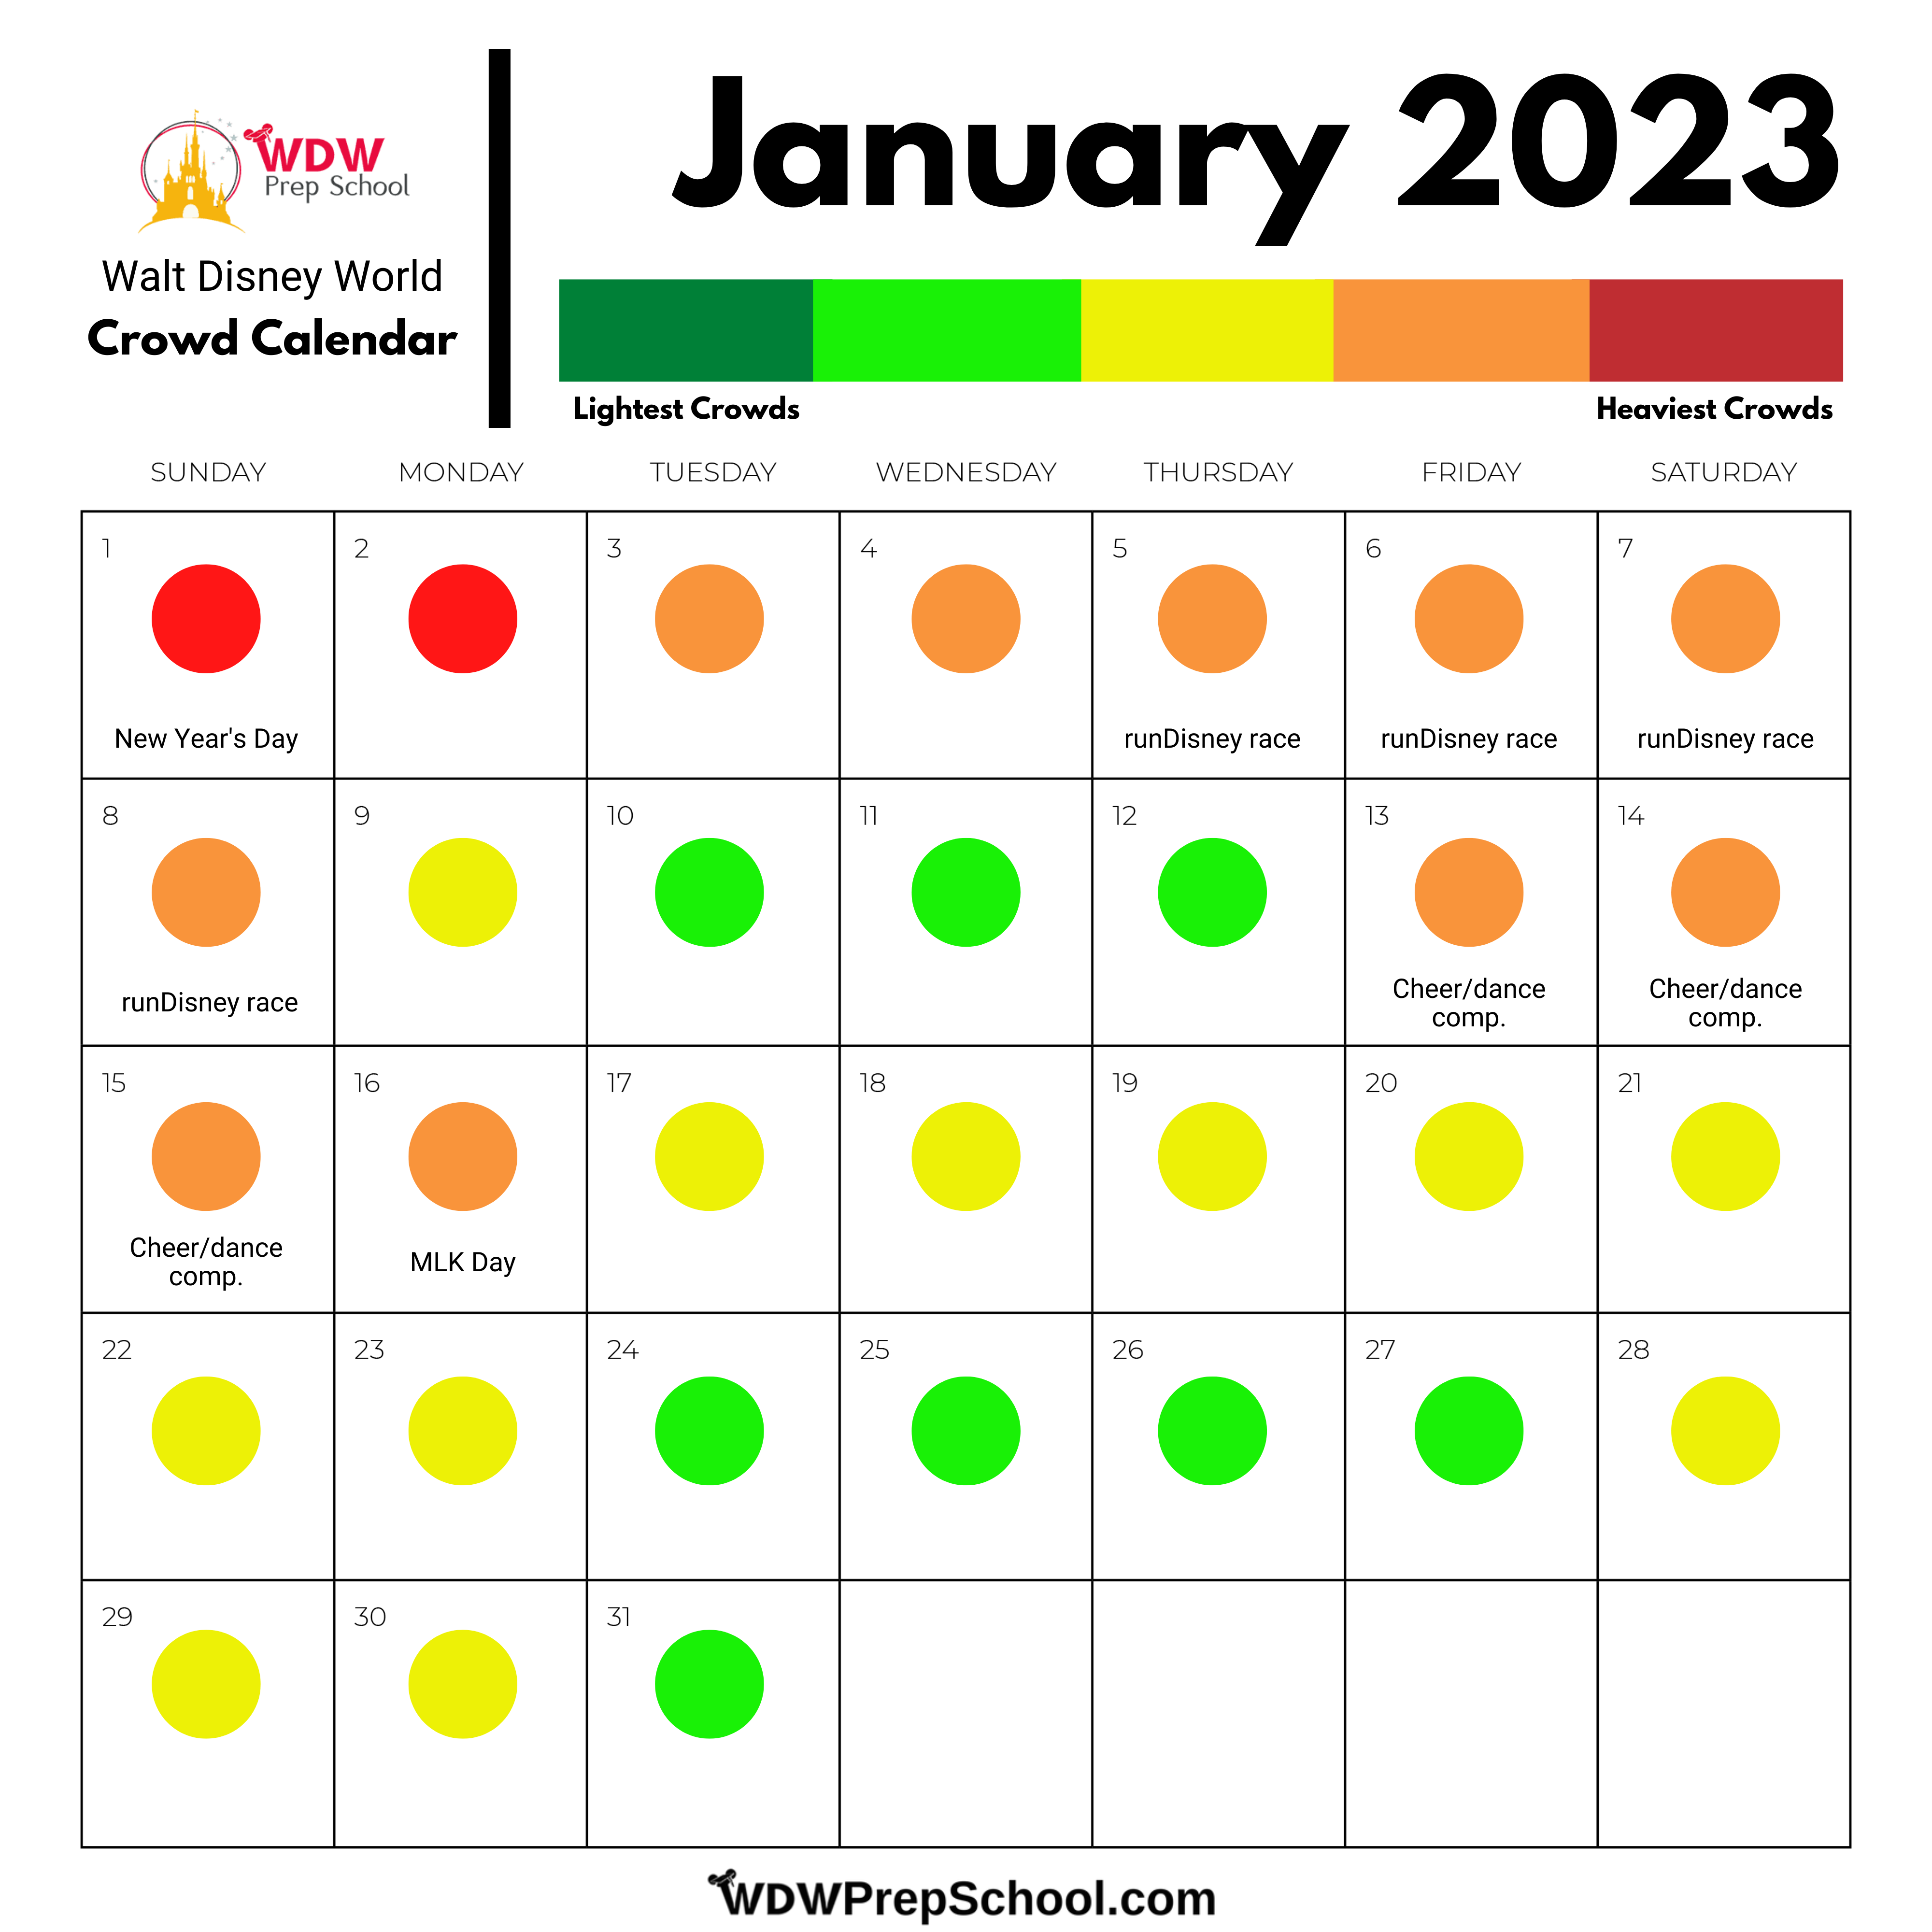 disney-world-crowd-calendar-2023-by-park-get-calendar-2023-update